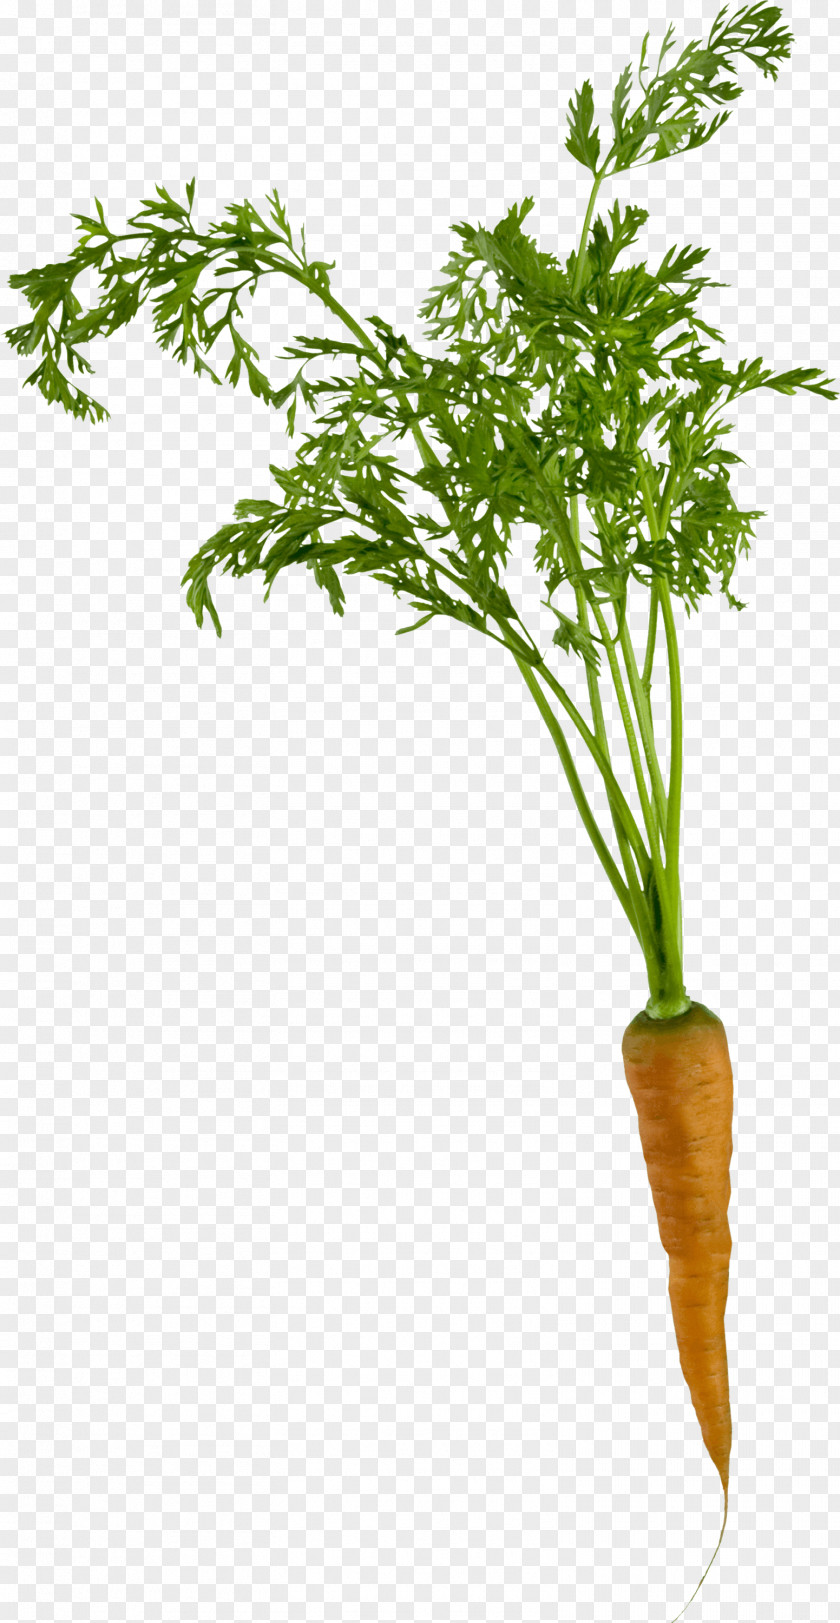 Carrots Carrot Clip Art PNG